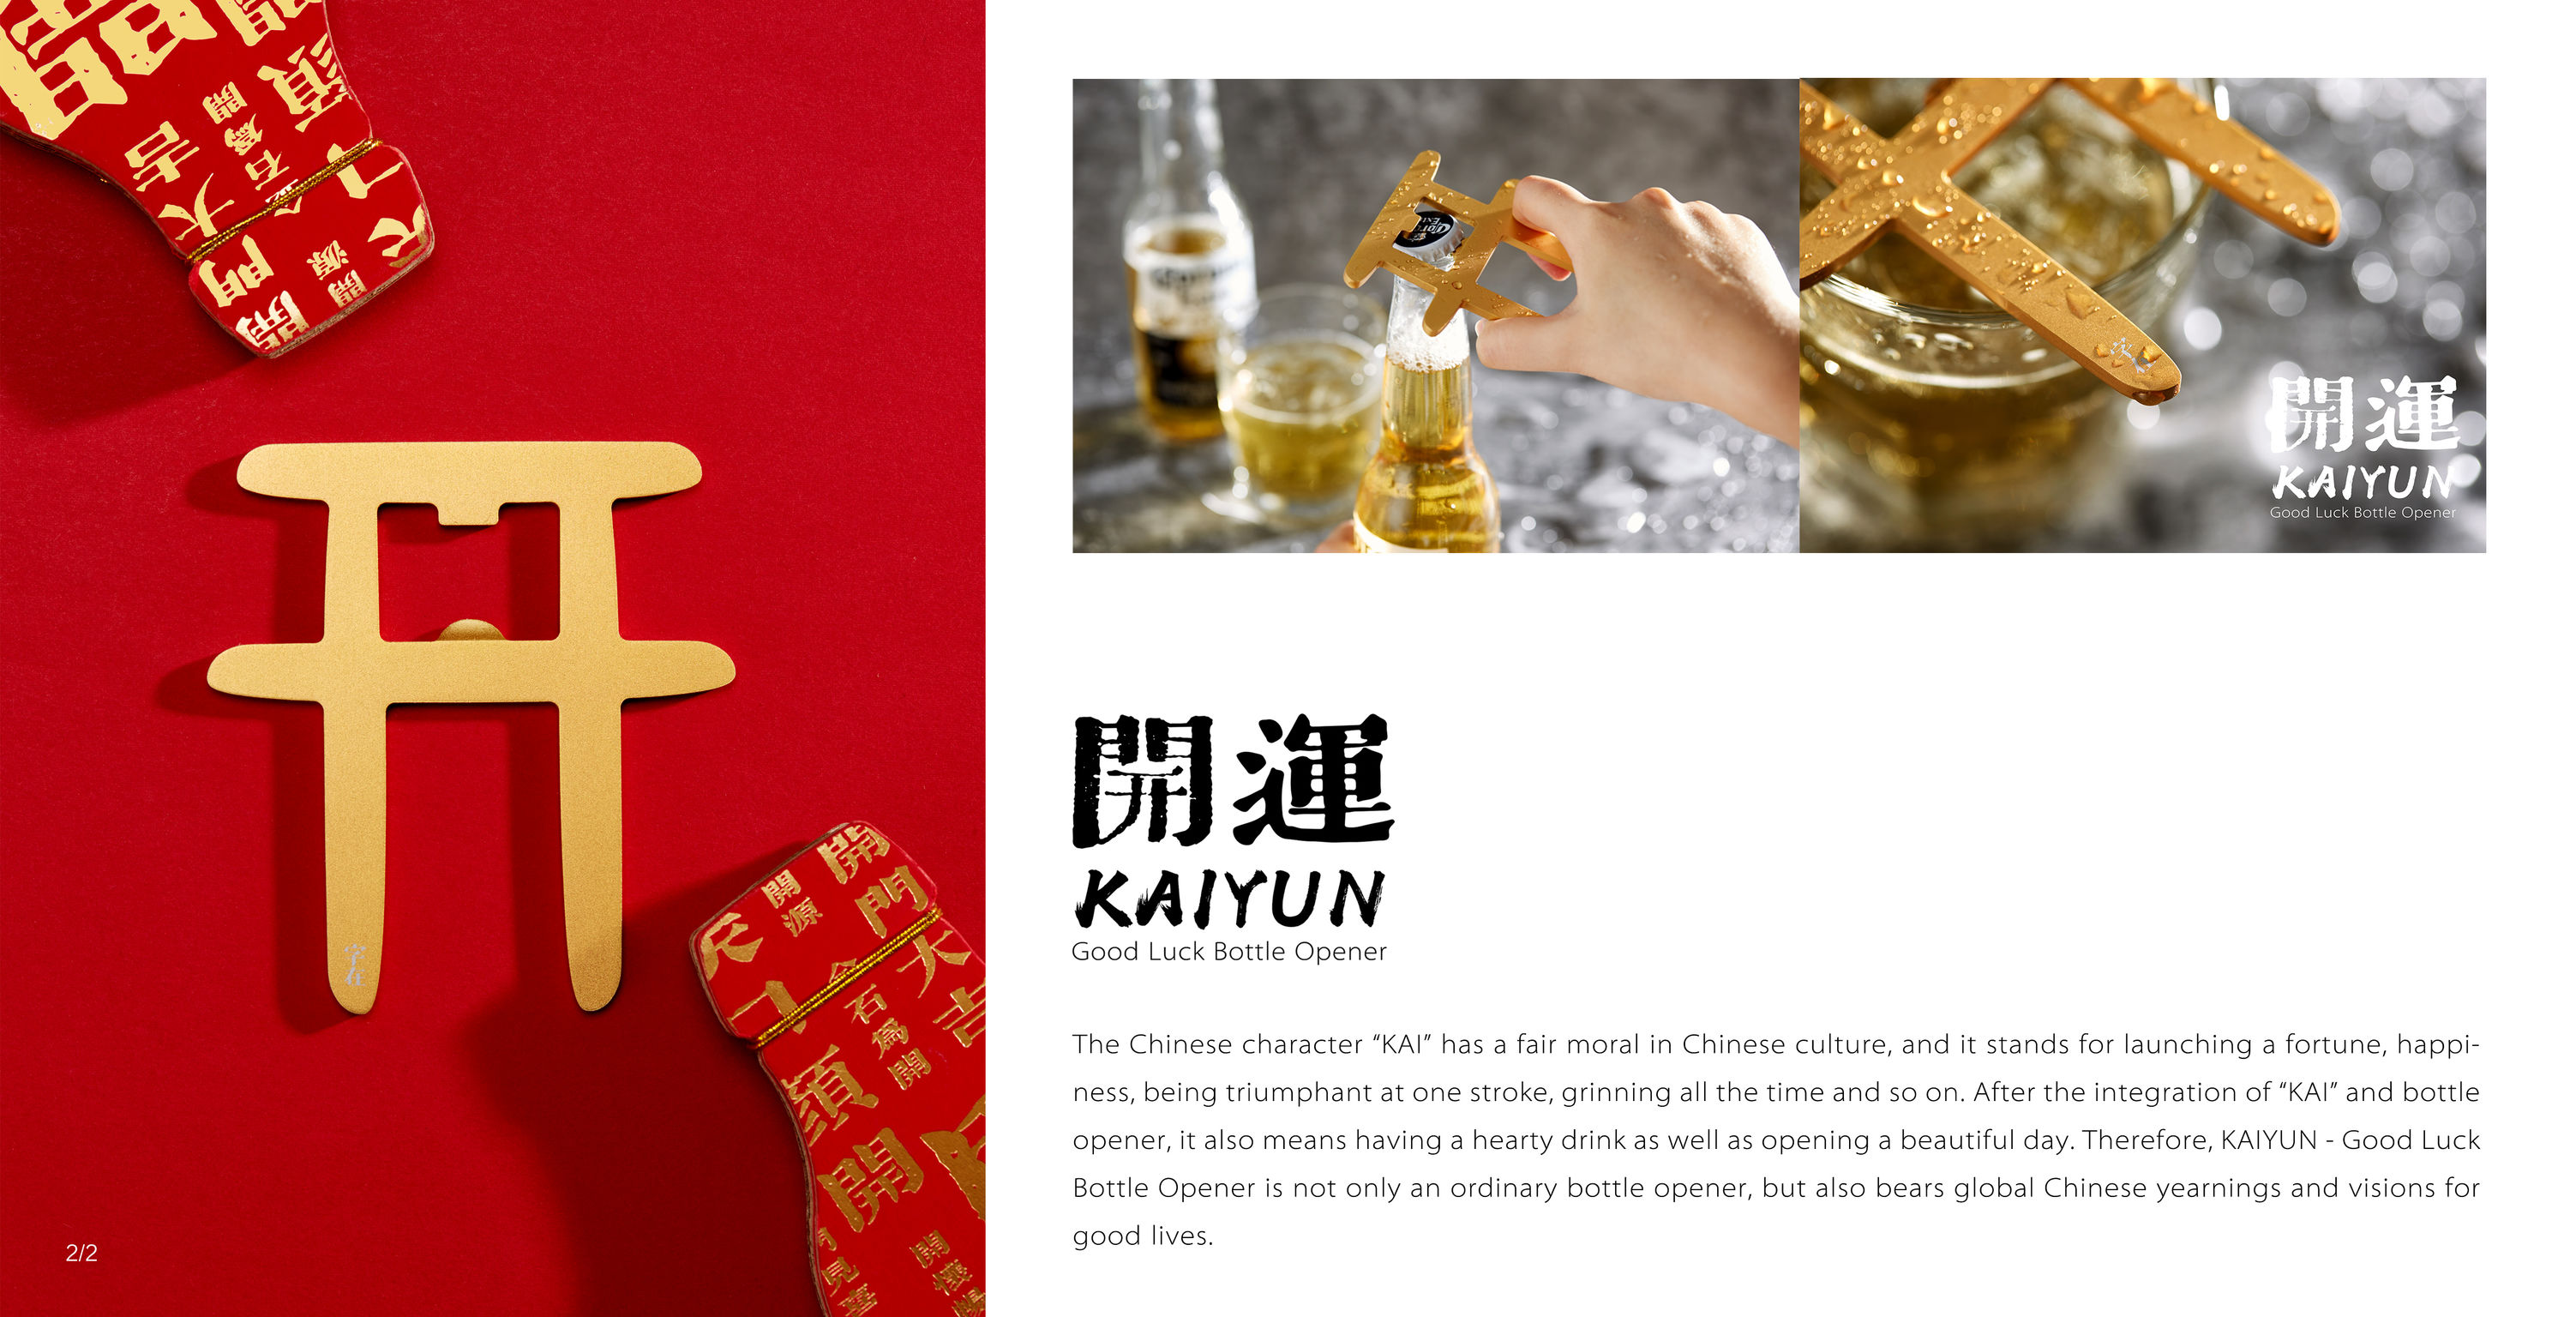 KAIYUN - Good Luck Bottle Opener